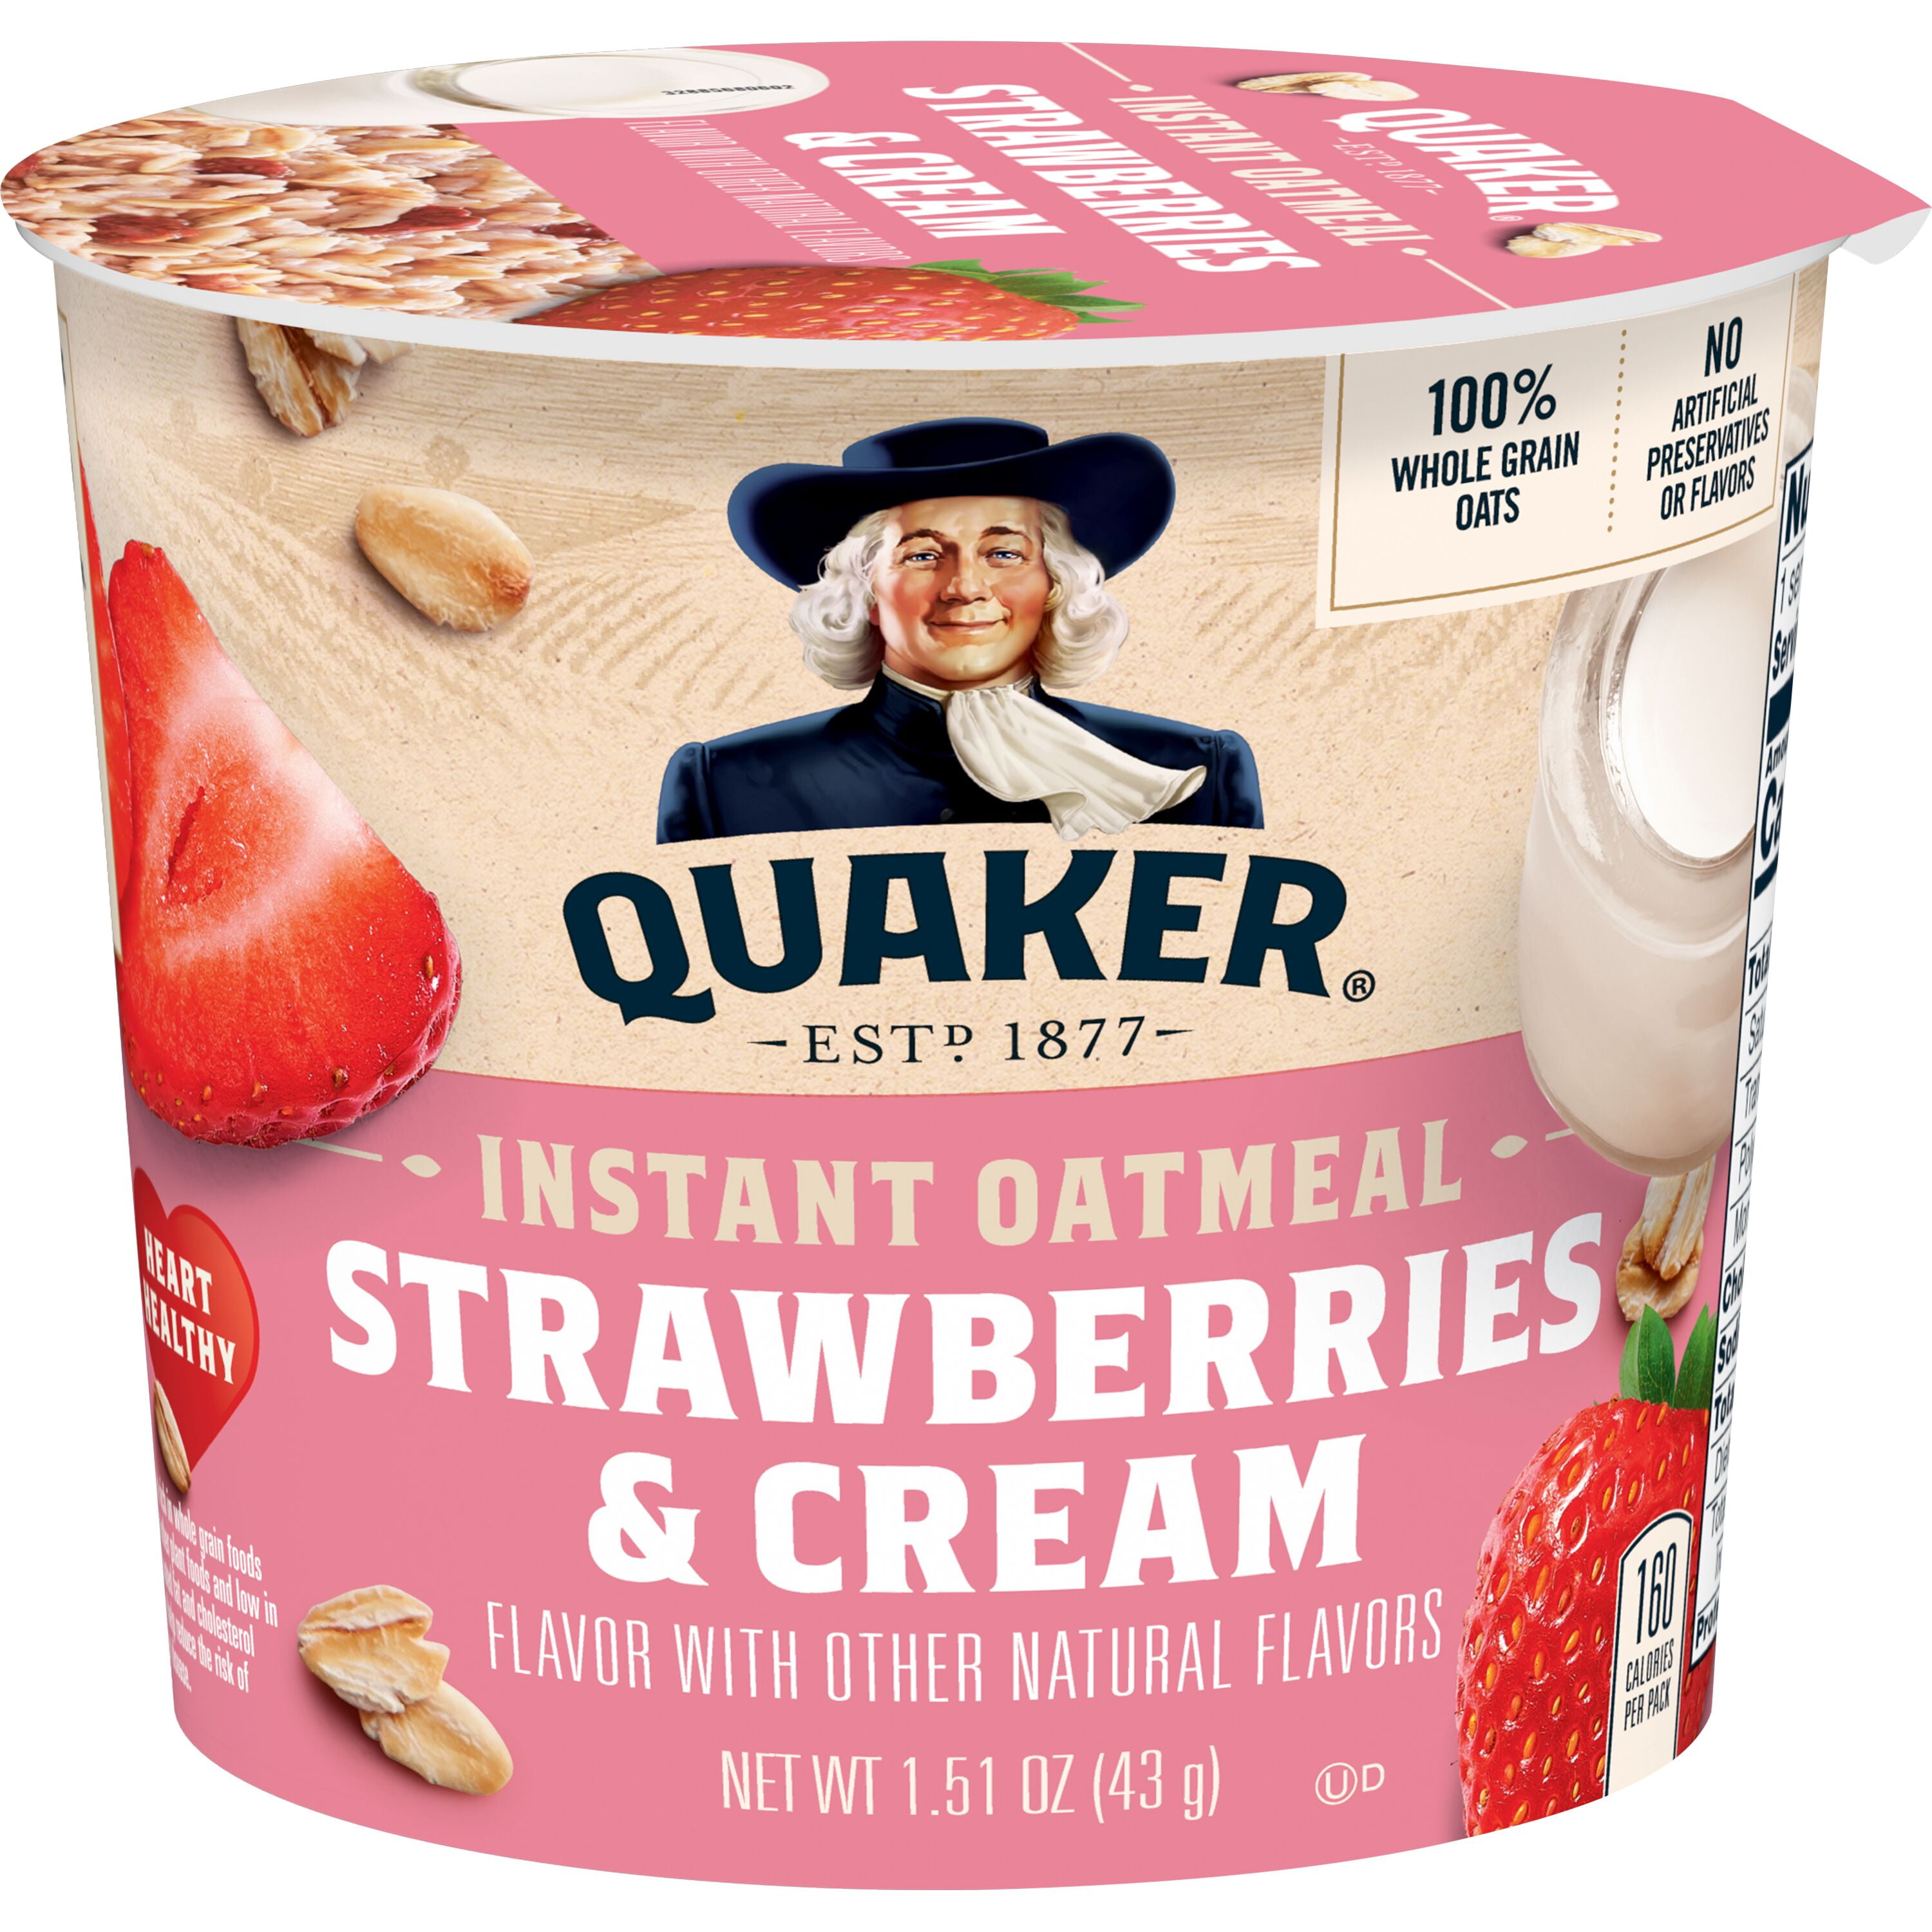 Quaker, Instant Oatmeal, Strawberry & Cream, 1.51 oz